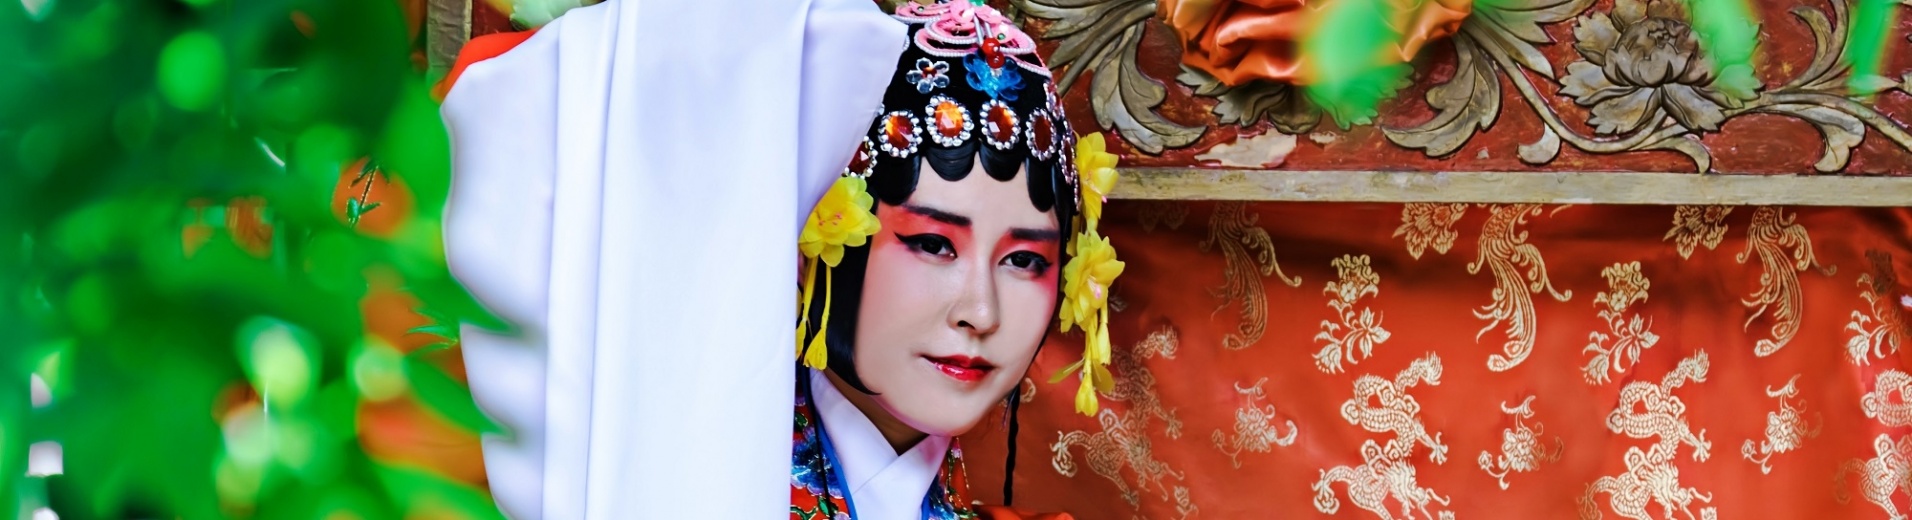 Femme chinoise portant des vêtements traditionnels dans le parc chinois